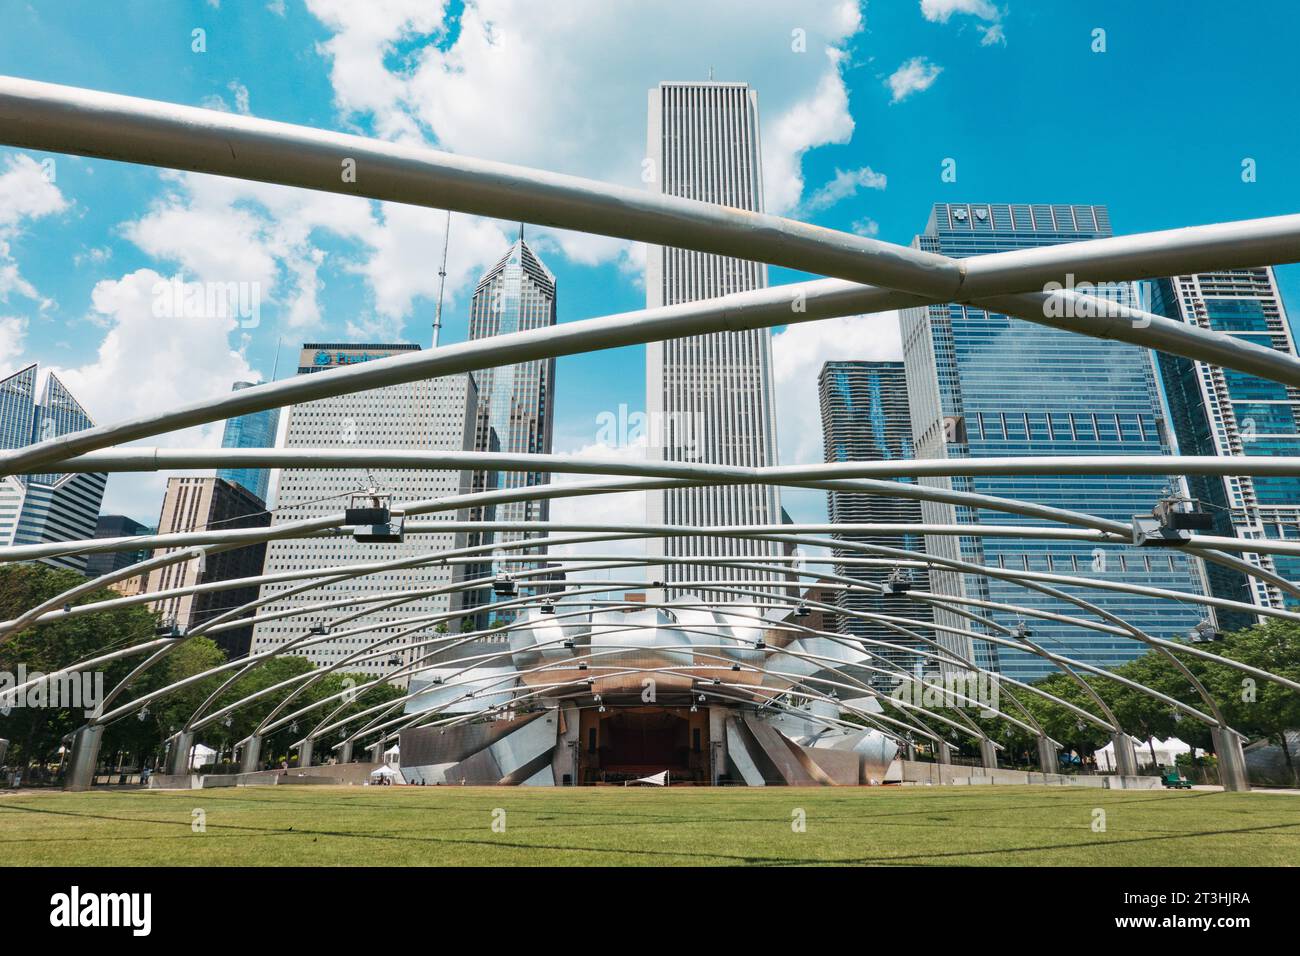 Des barres métalliques sillonnent le Jay Pritzker Pavilion, un amphithéâtre du Millennium Park à Chicago Banque D'Images